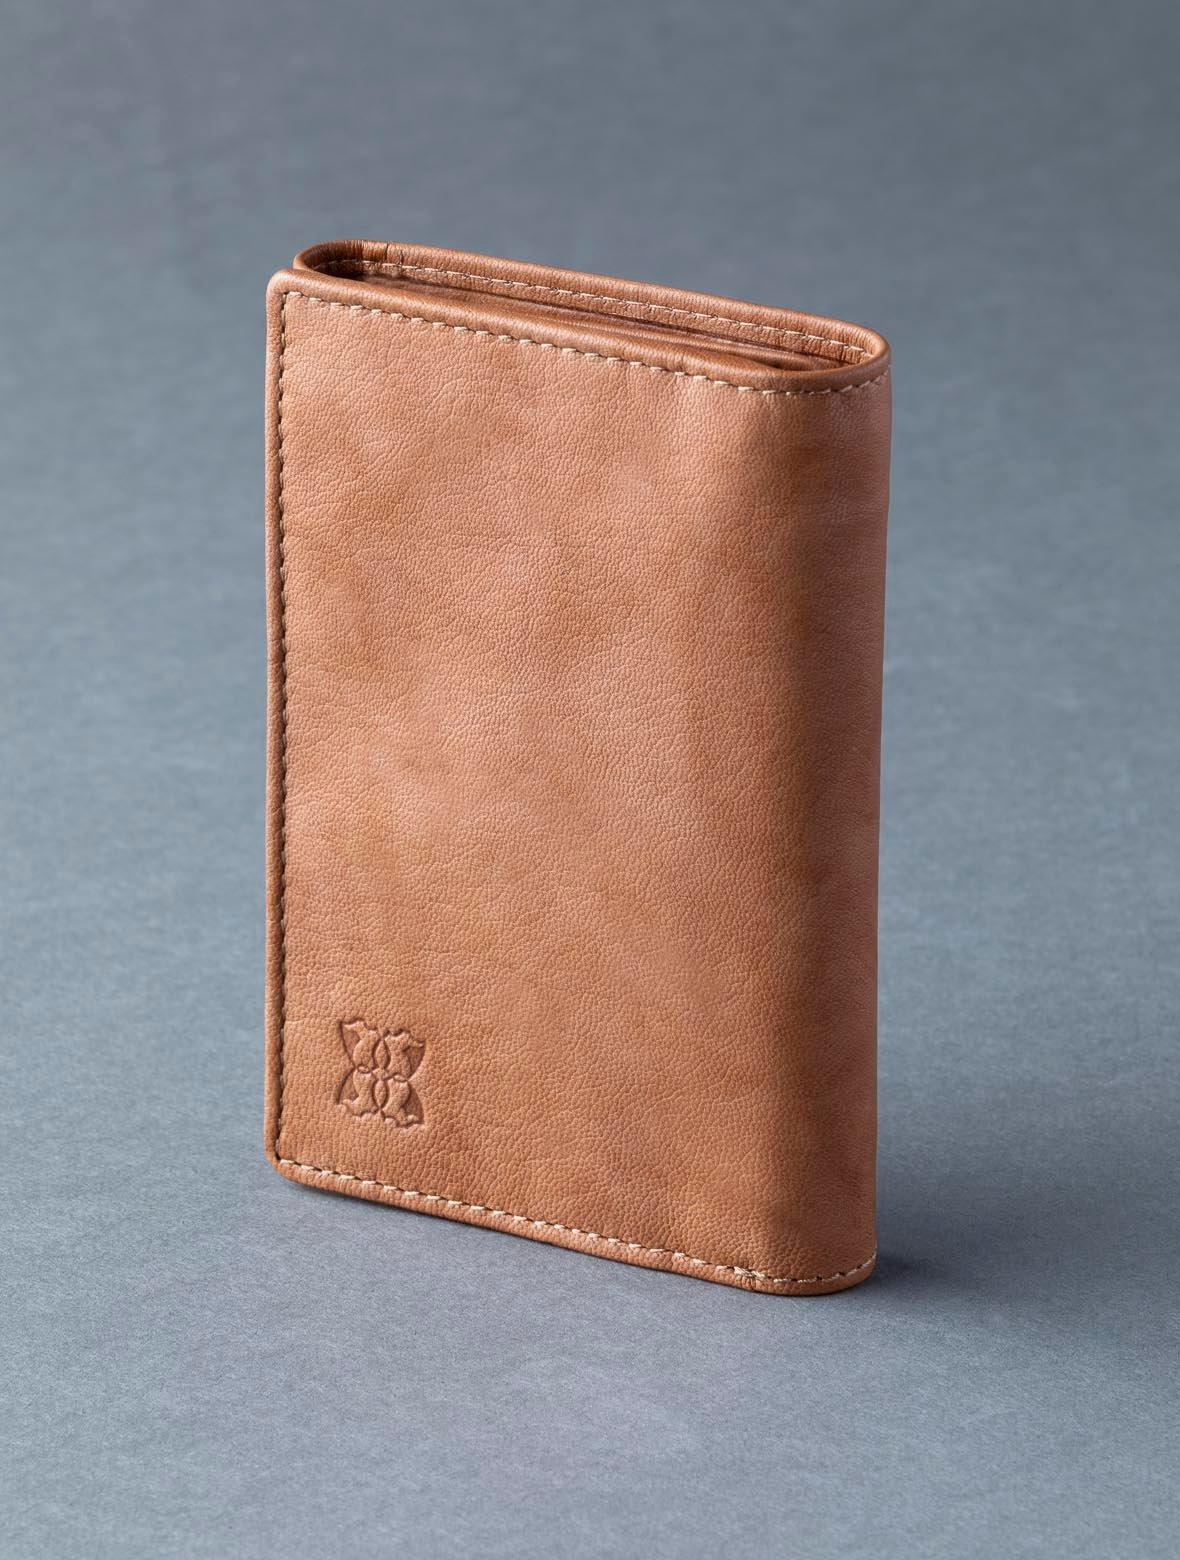 Кожаный кошелек в три сложения 'Bowston' Lakeland Leather, коричневый